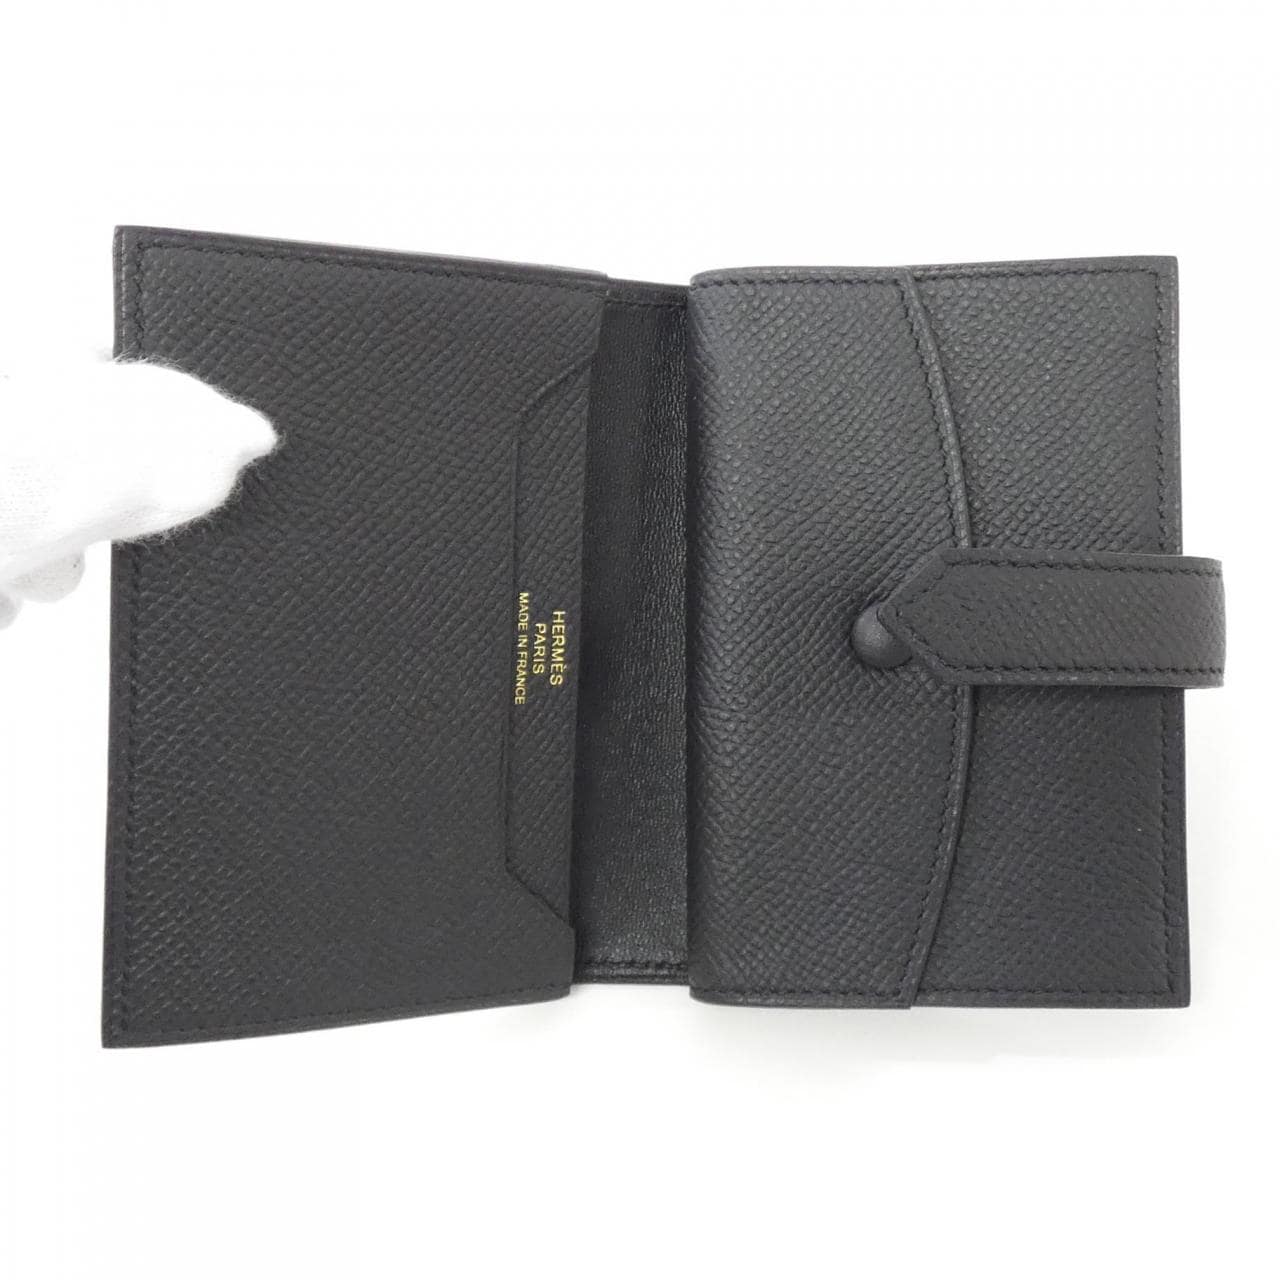 [Unused items] HERMES Bearn Mini 039796CC Wallet